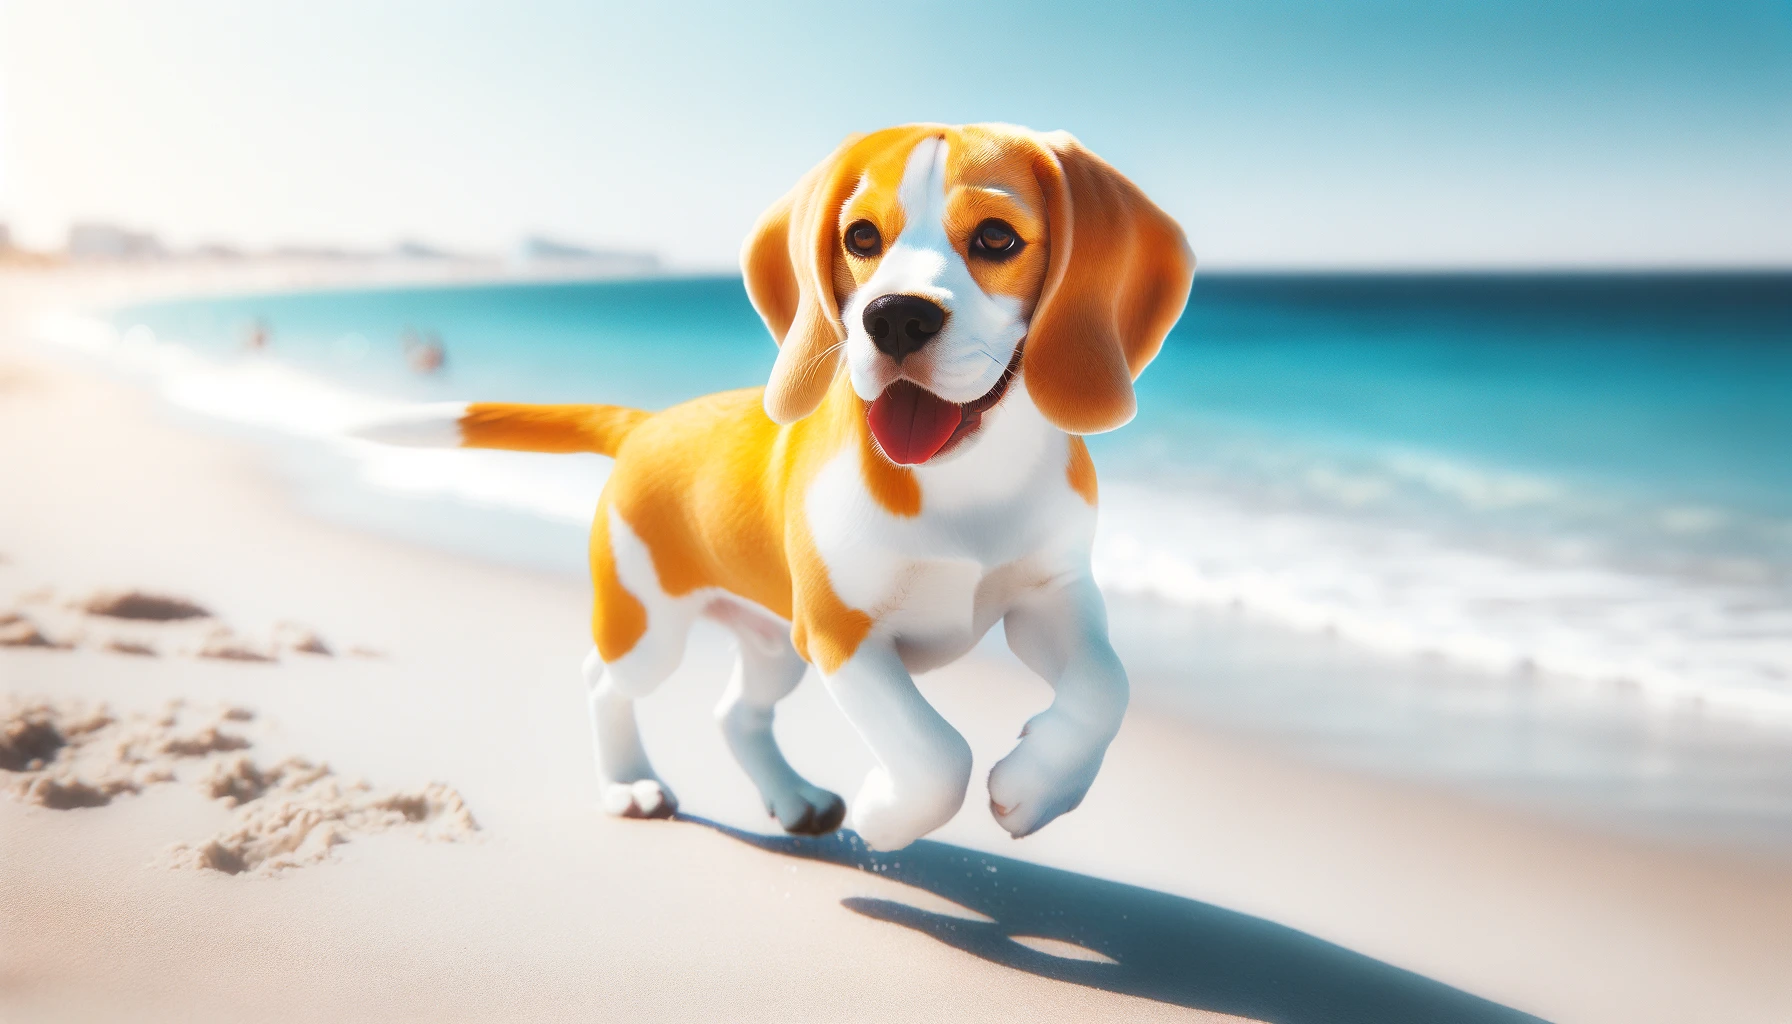 Beagle on a sunny beach